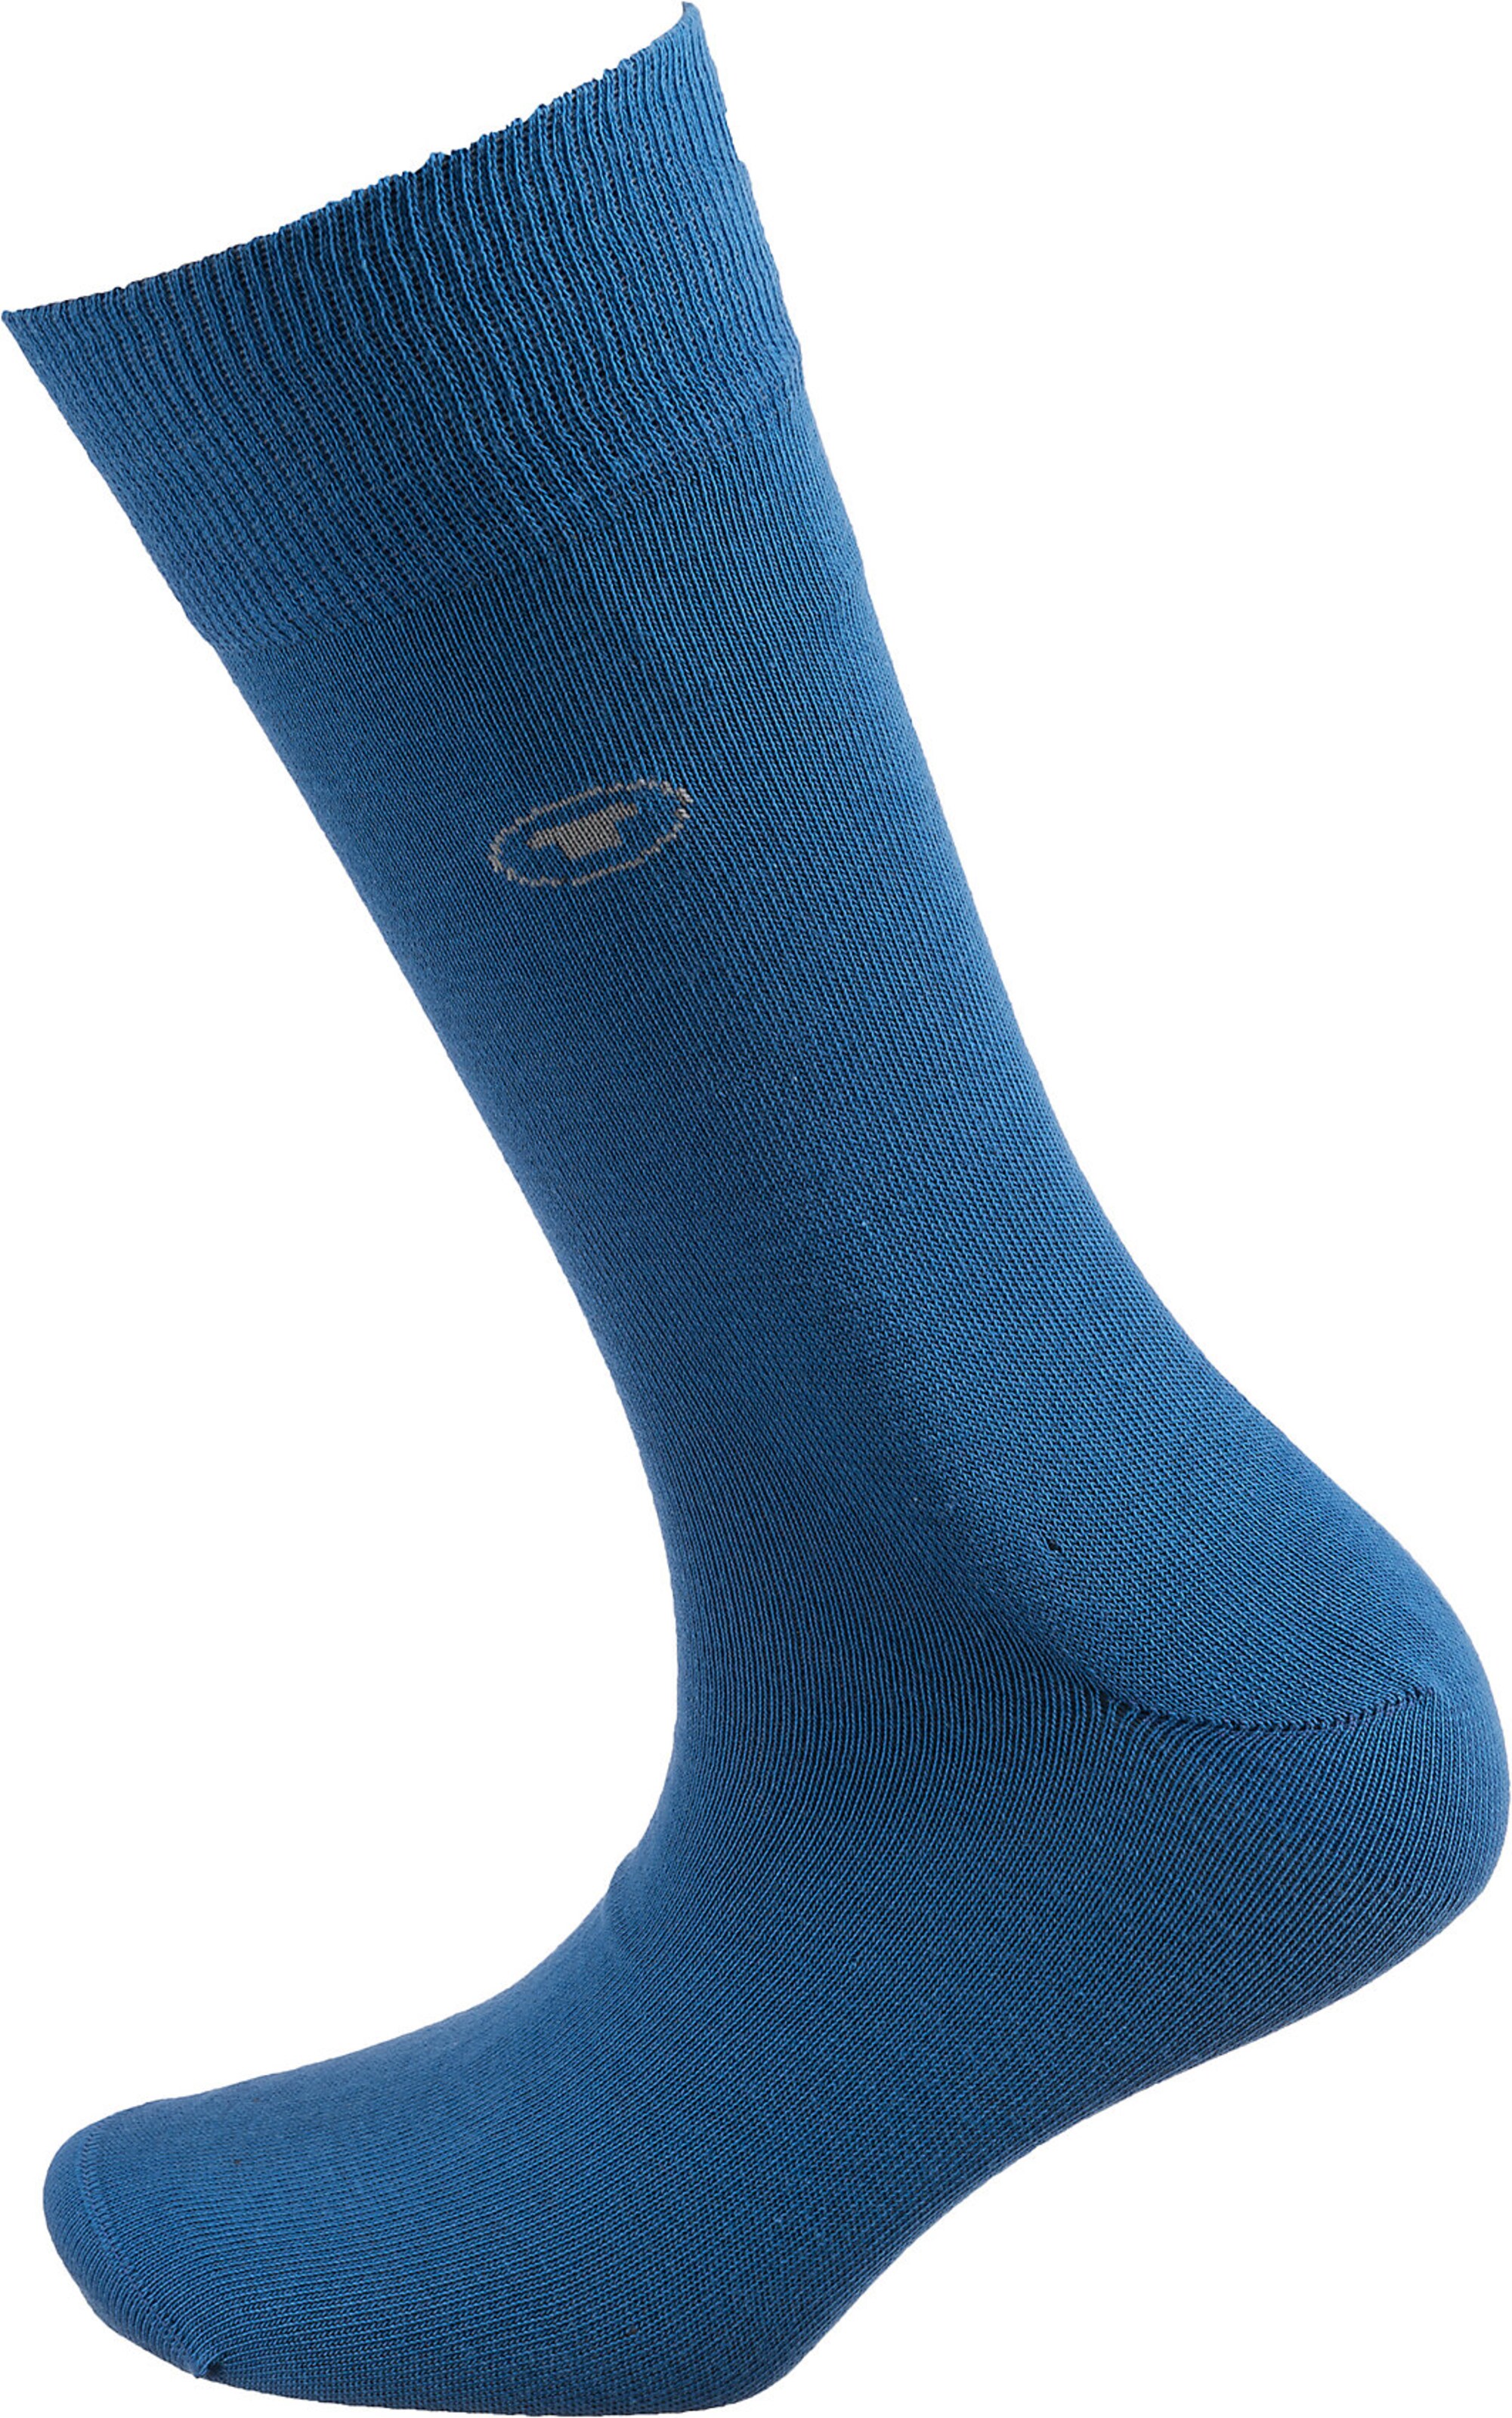 Männer Wäsche TOM TAILOR Socken in Blau, Navy, Nachtblau, Hellblau, Blaumeliert - CM86501